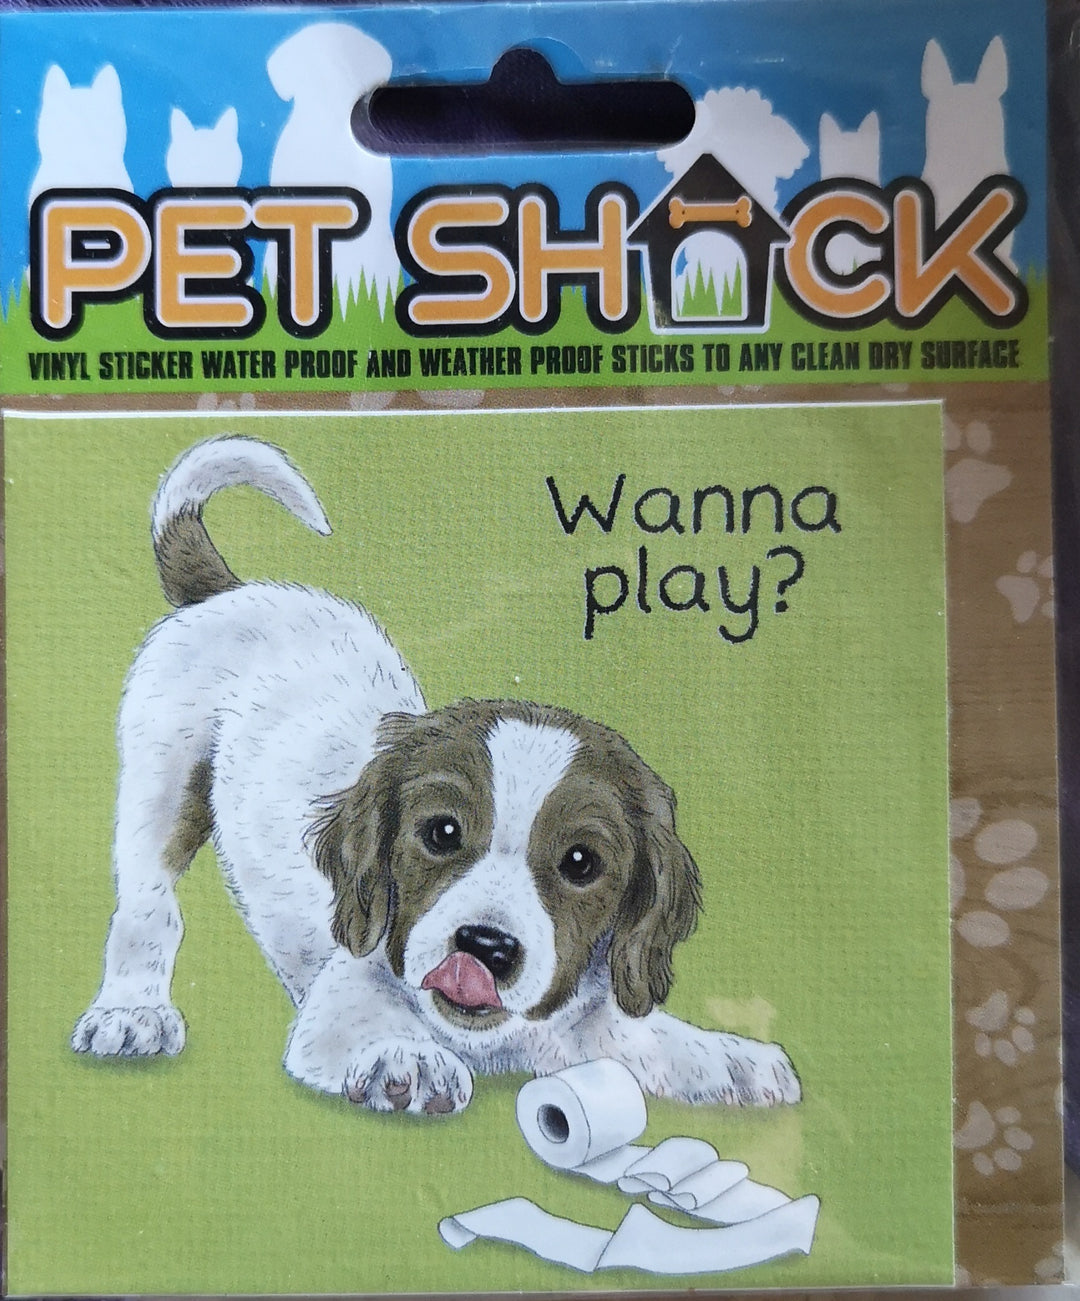 Aufkleber aus der "Pet Shack"" Reihe . "Wanna play?" - British Moments